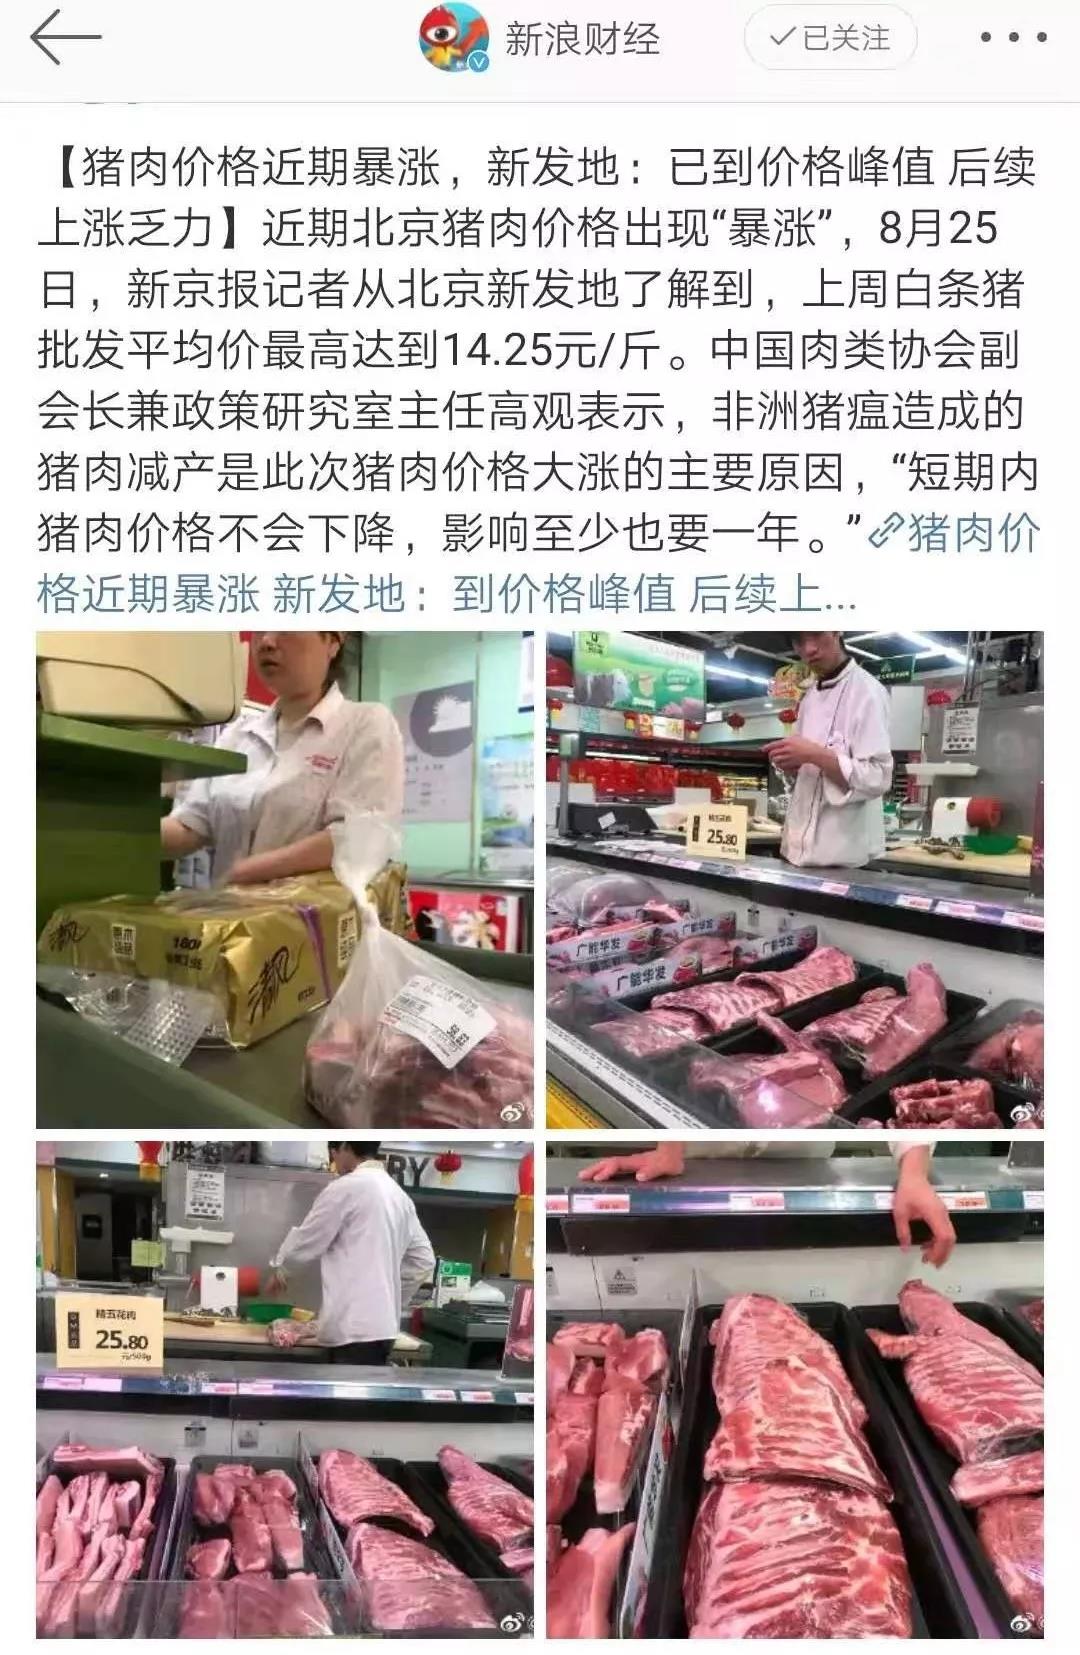 猪肉价格飞涨